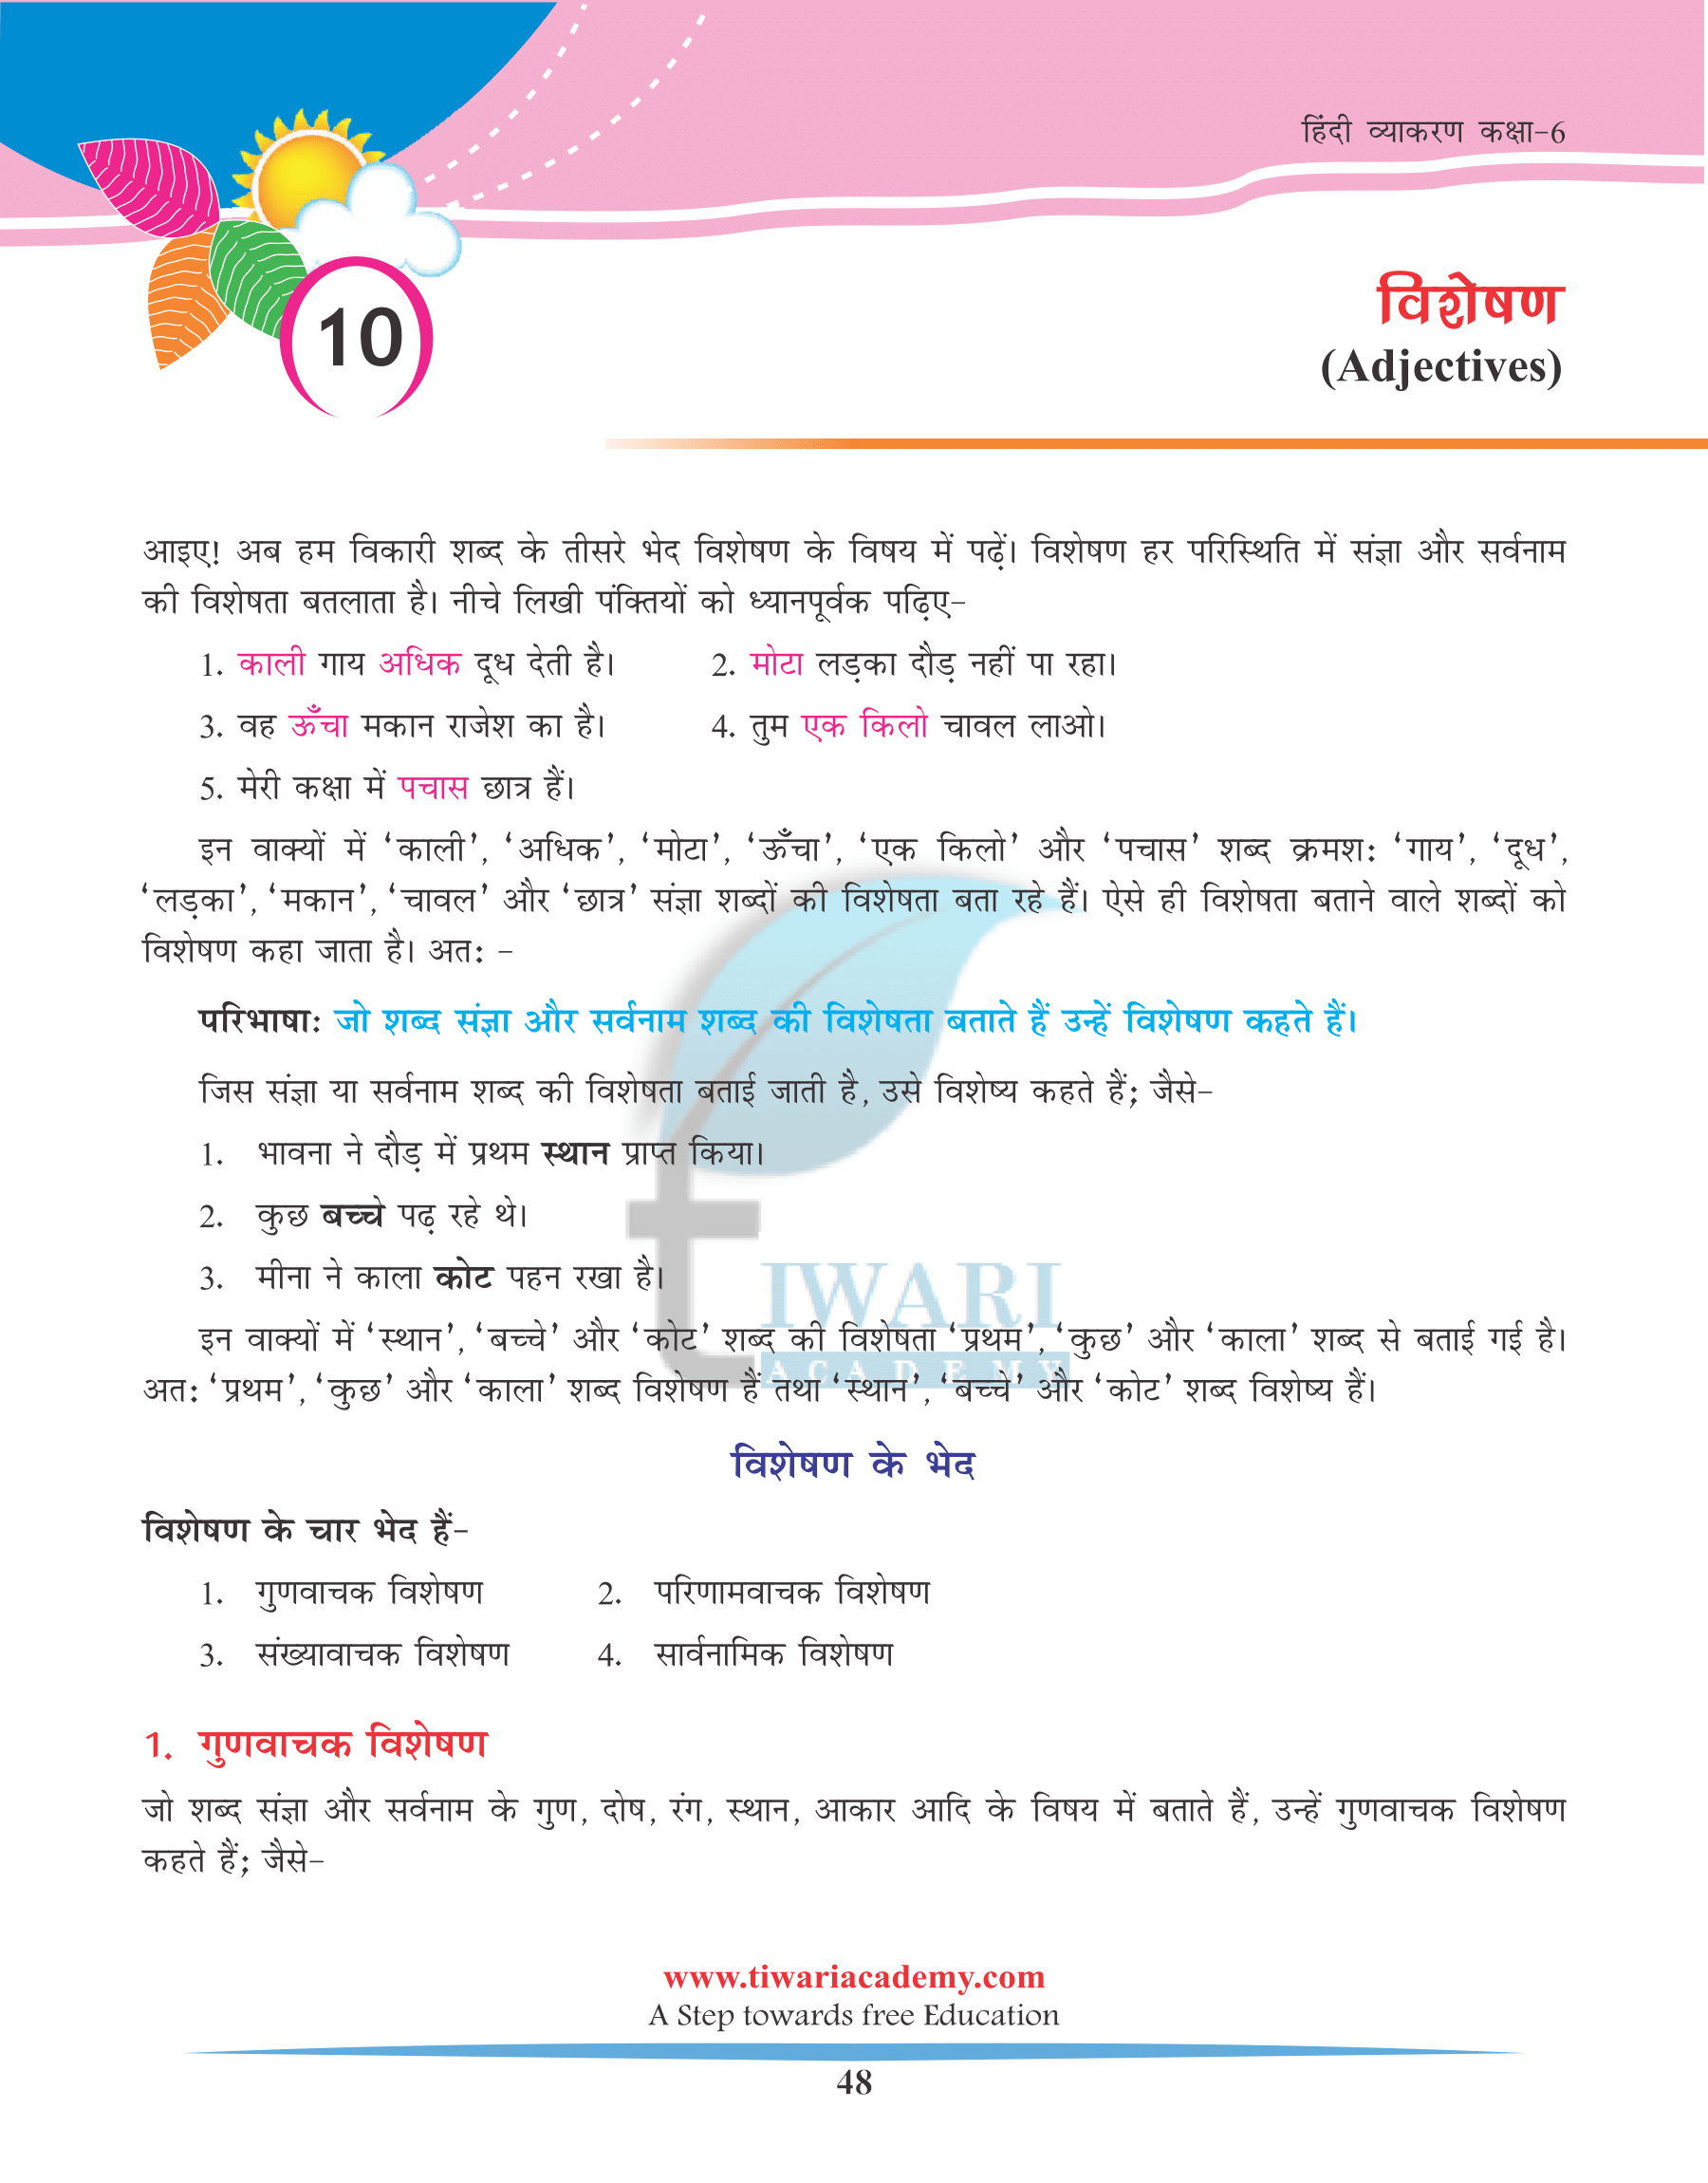 Class 6 Hindi Grammar Chapter 10 Visheshan ke prakar